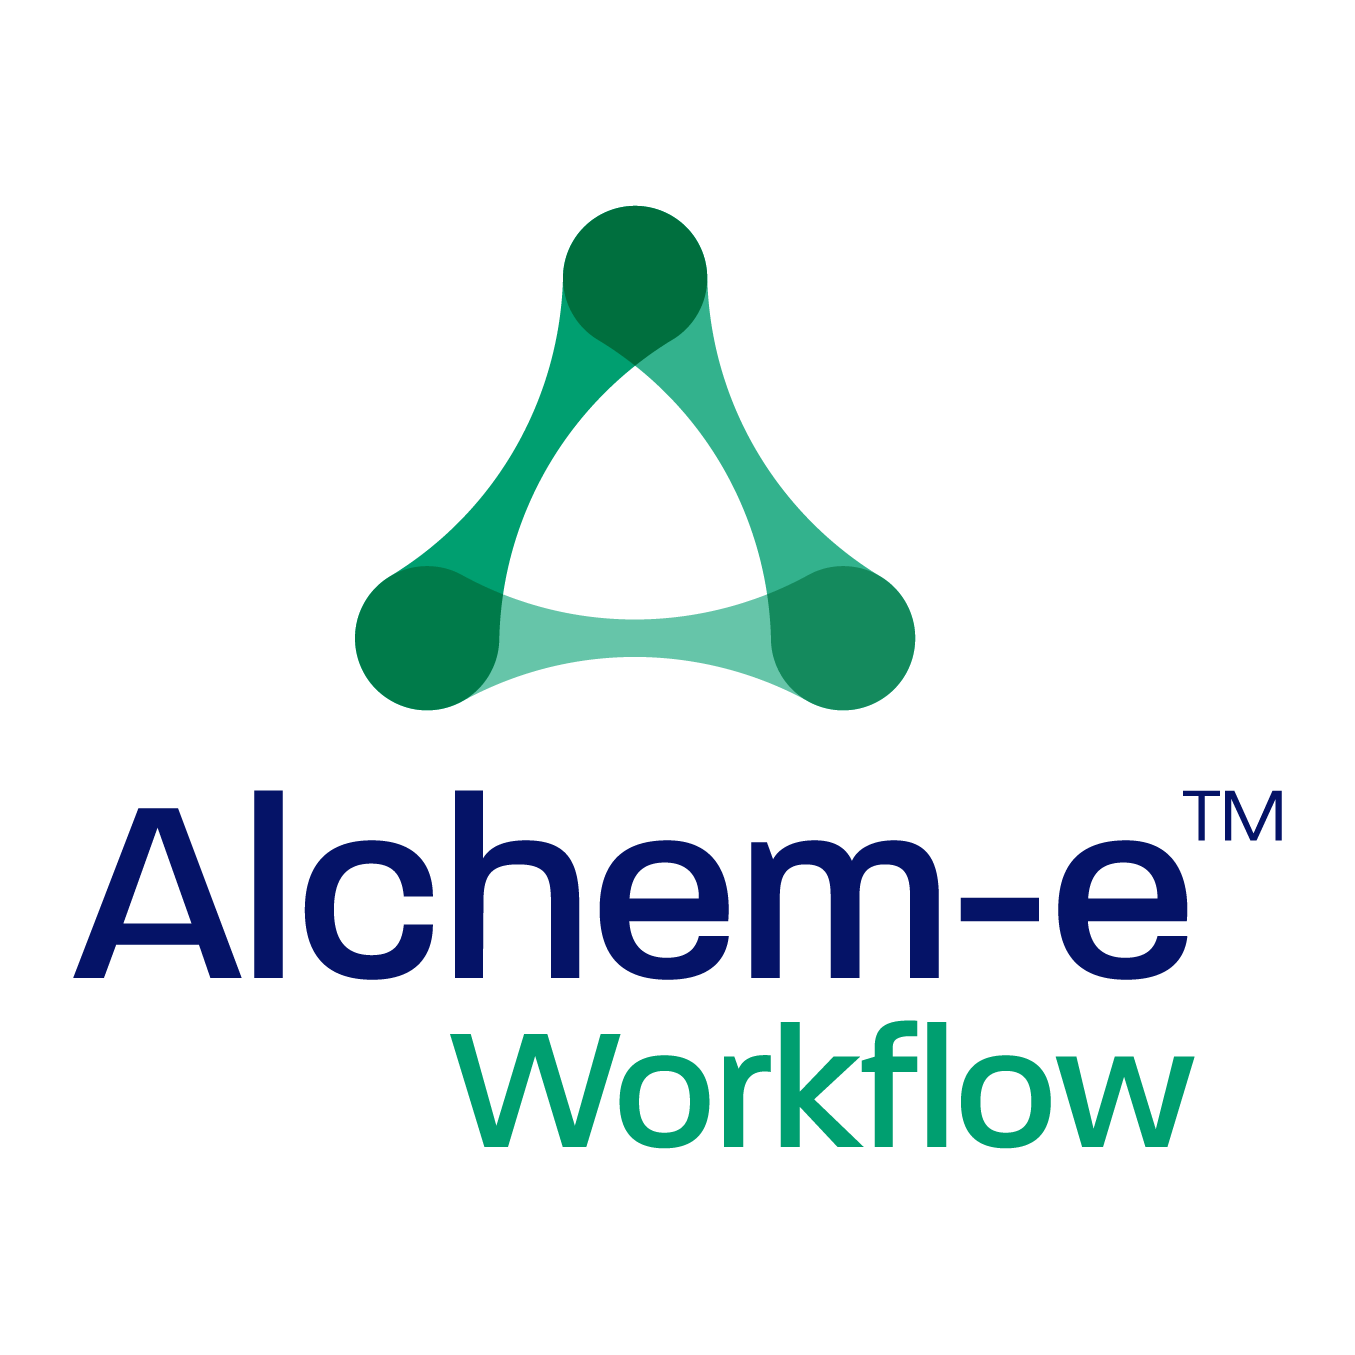 Alchem-e Workflow